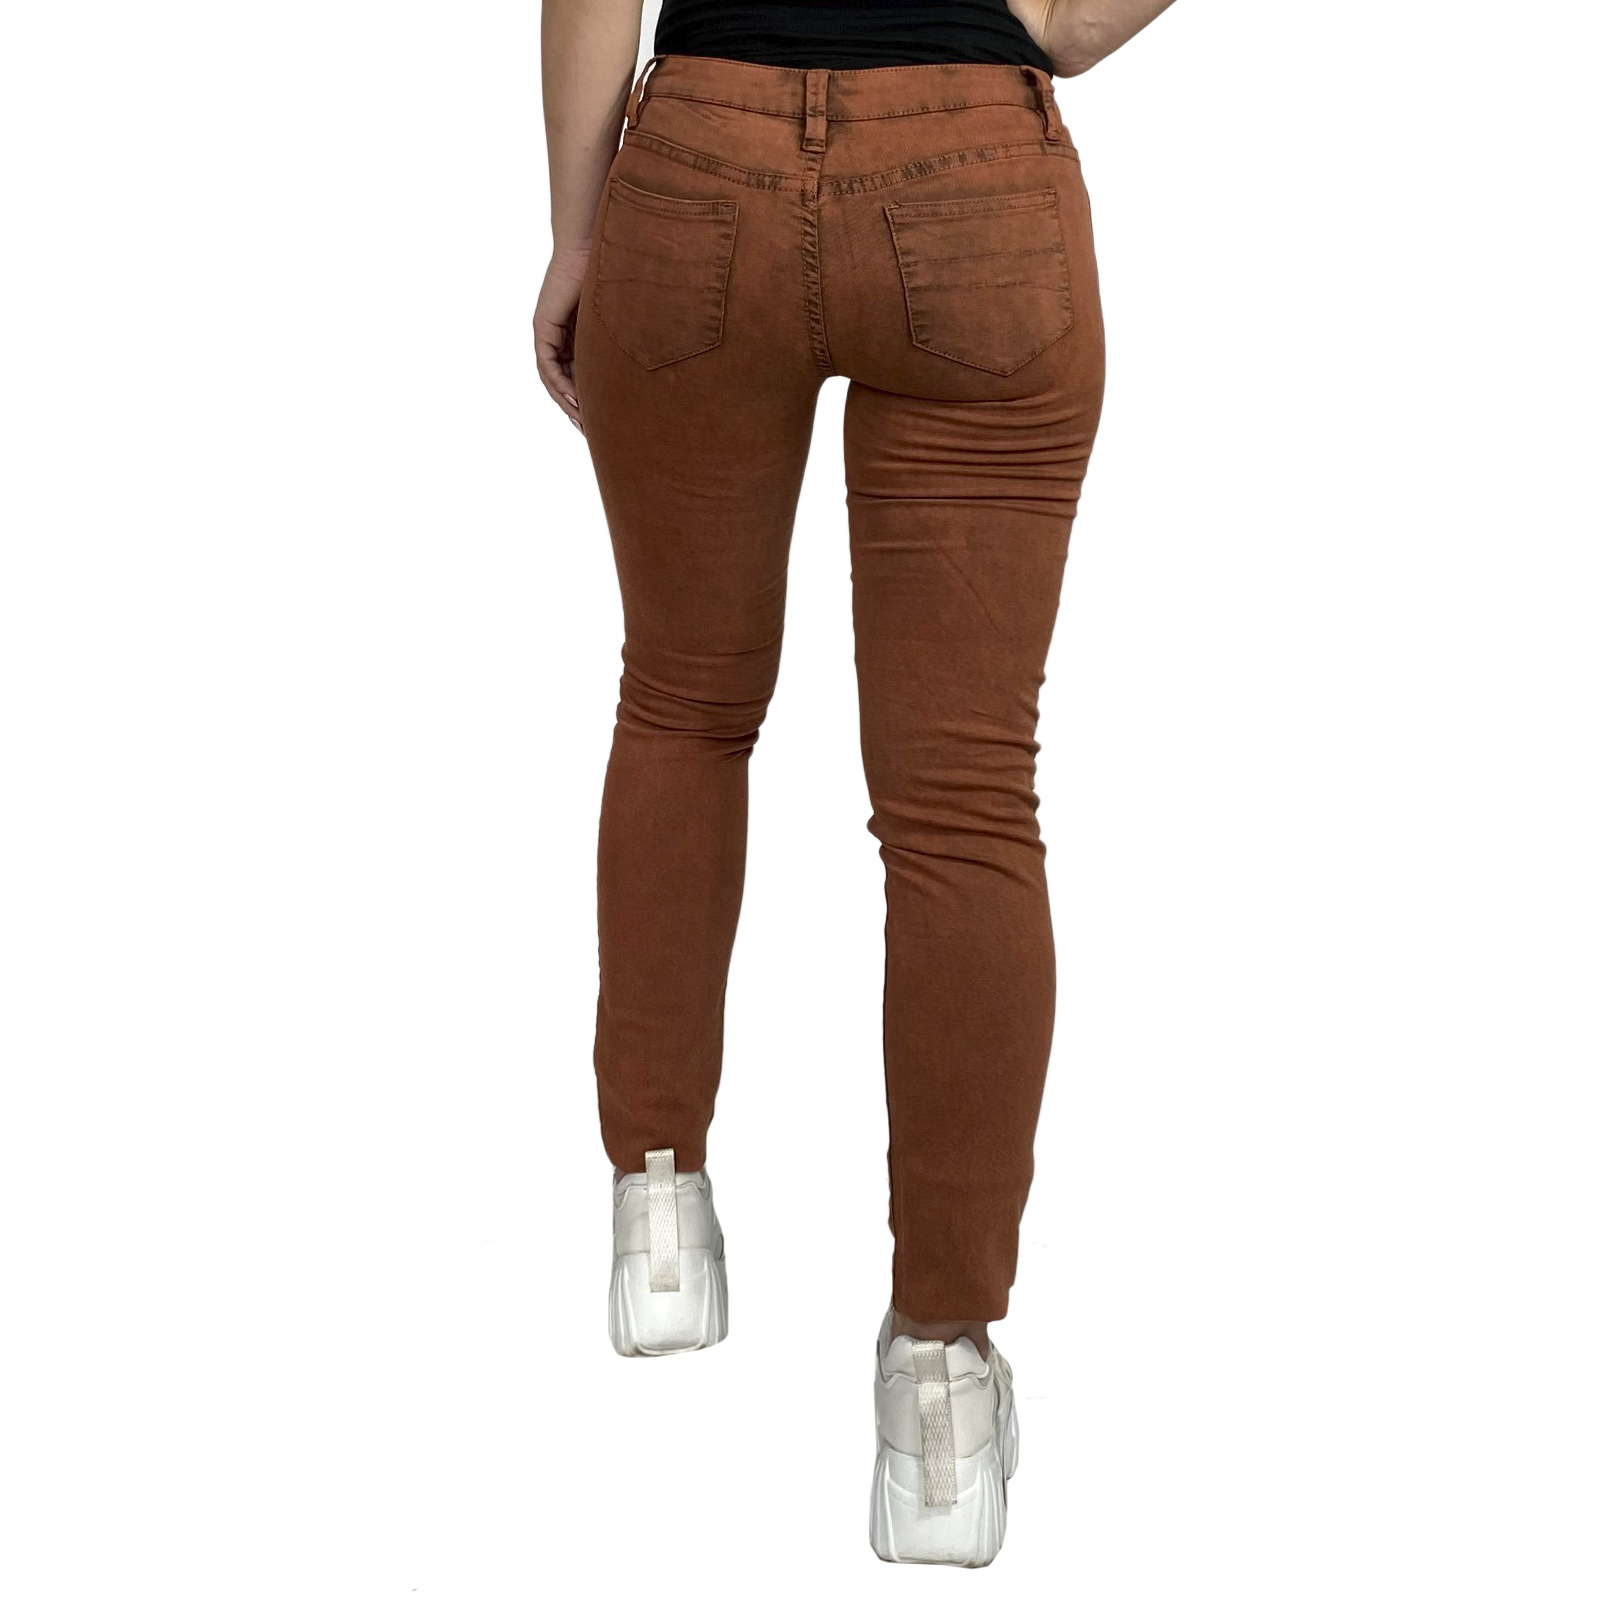 Женские джинсы в обтяжку – такого цвета вы не найдете больше нигде!